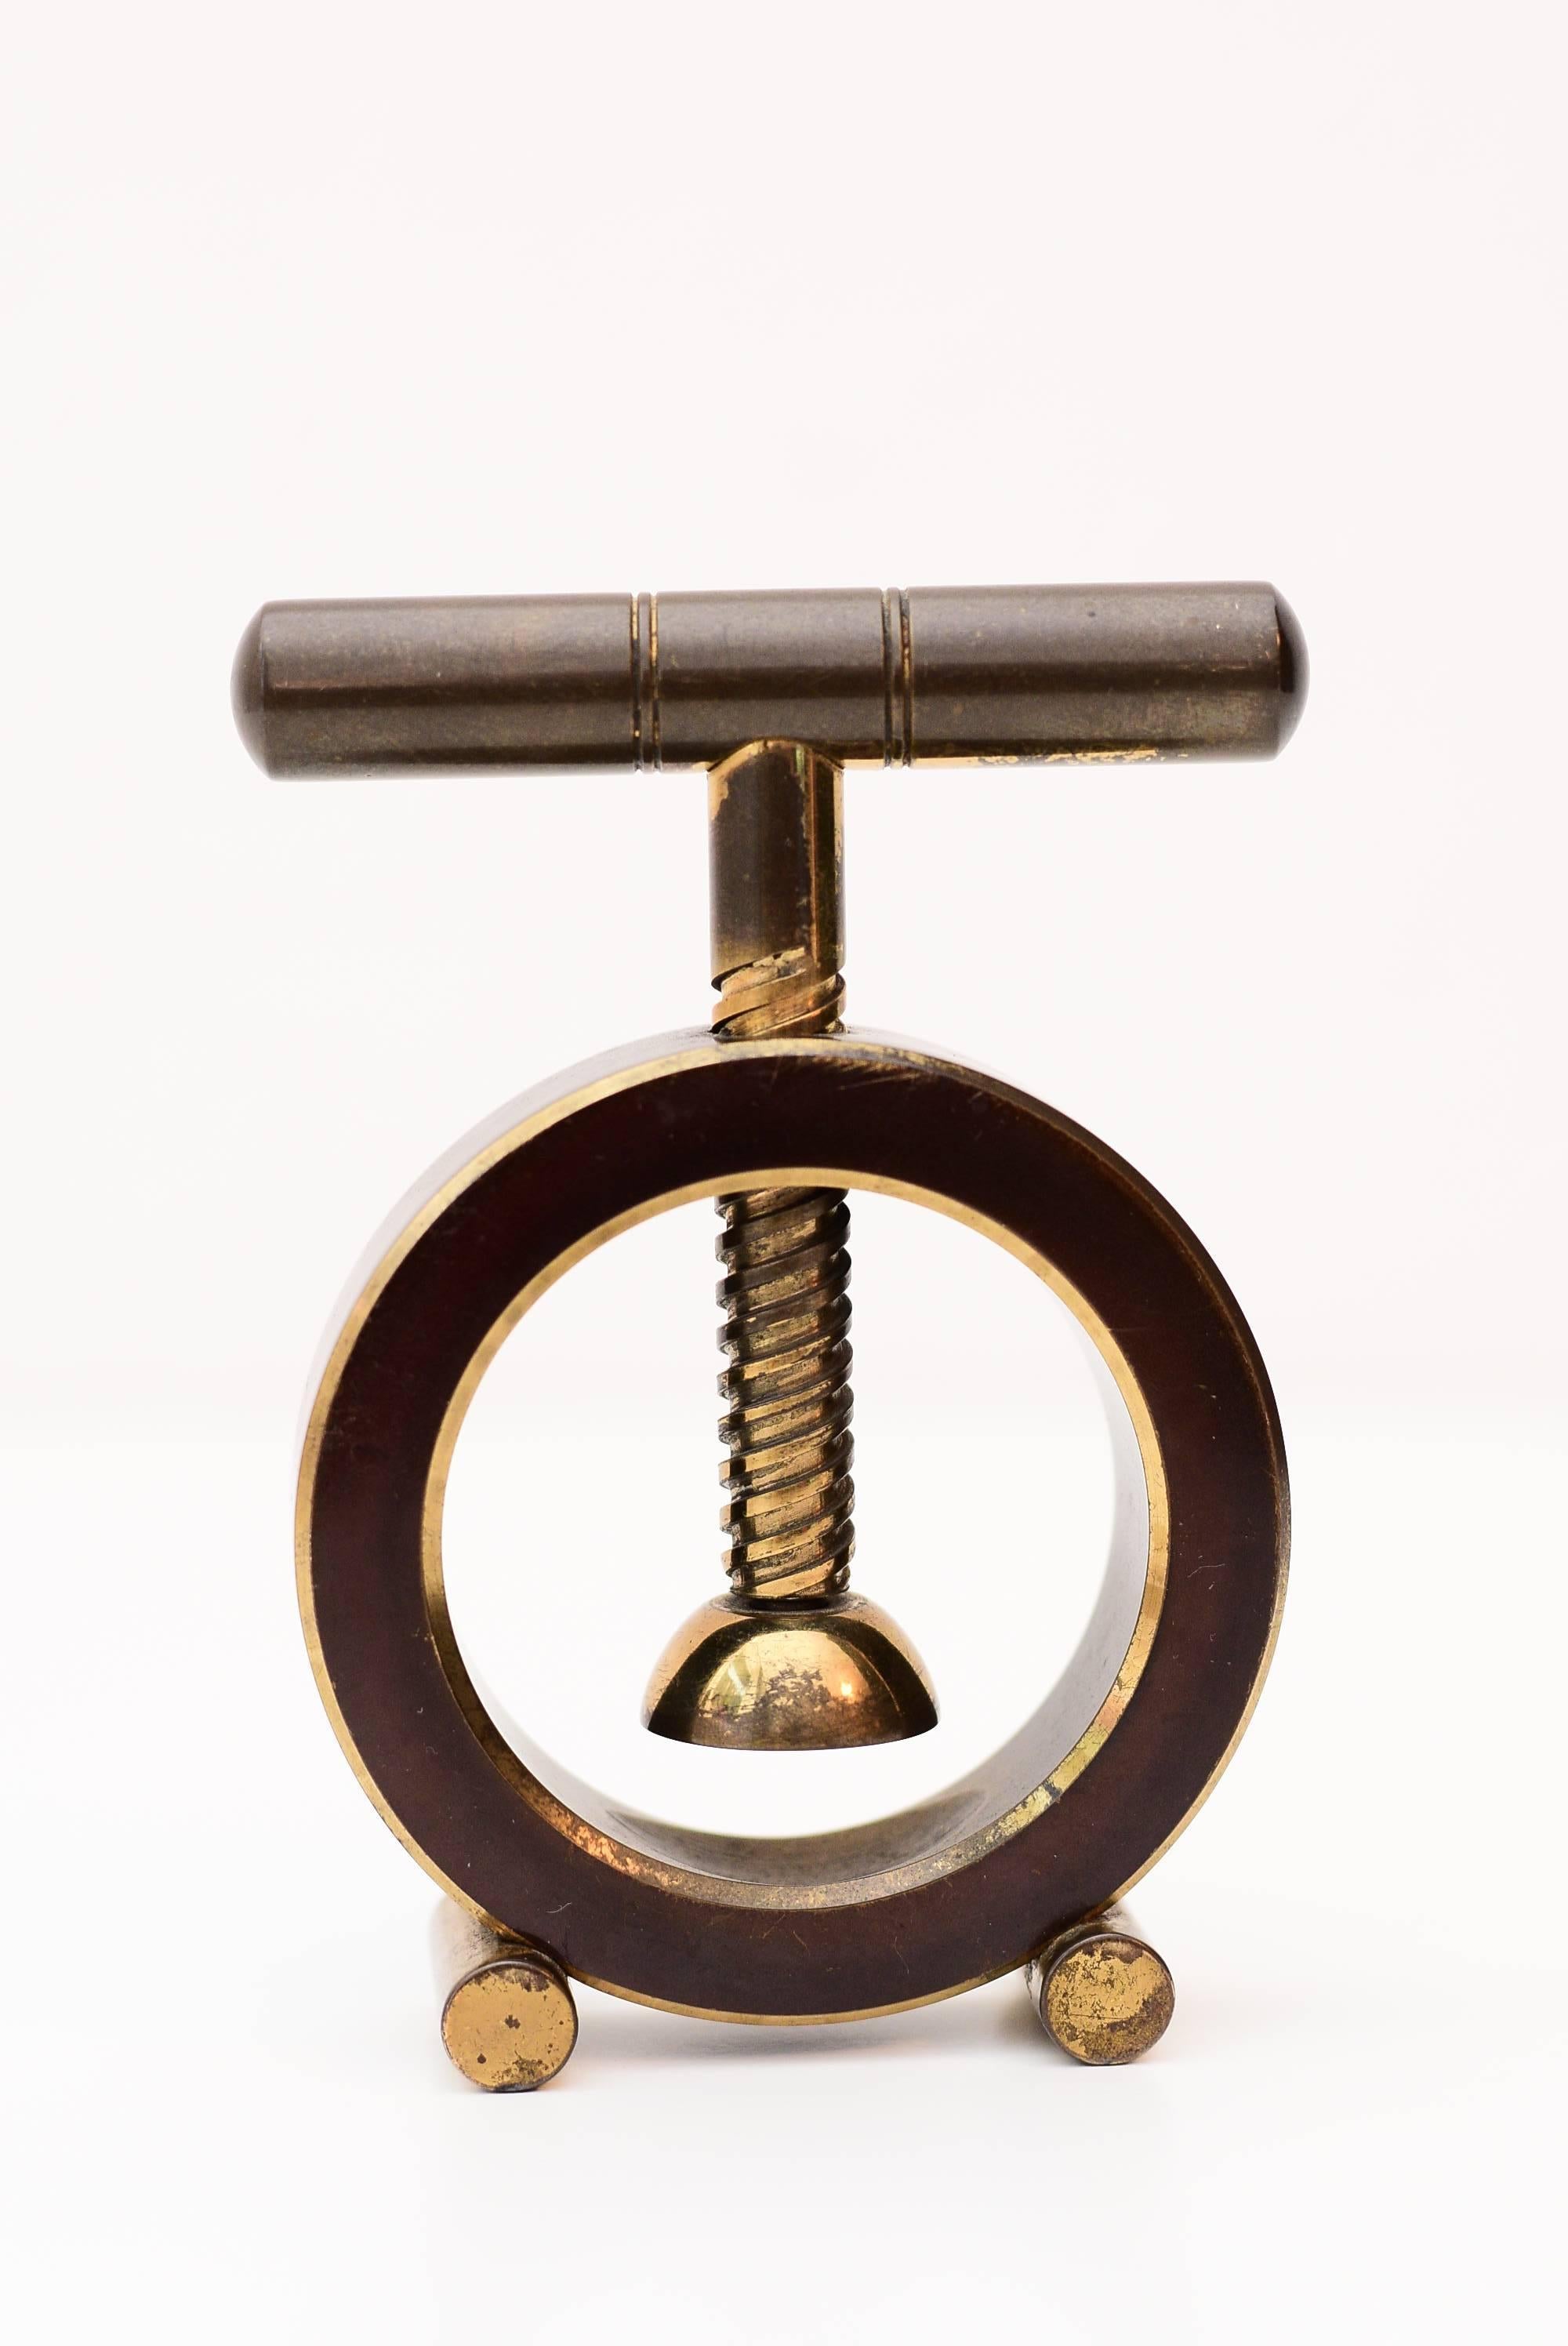 Carl Auböck heavy nutcracker brass.
Original condition.